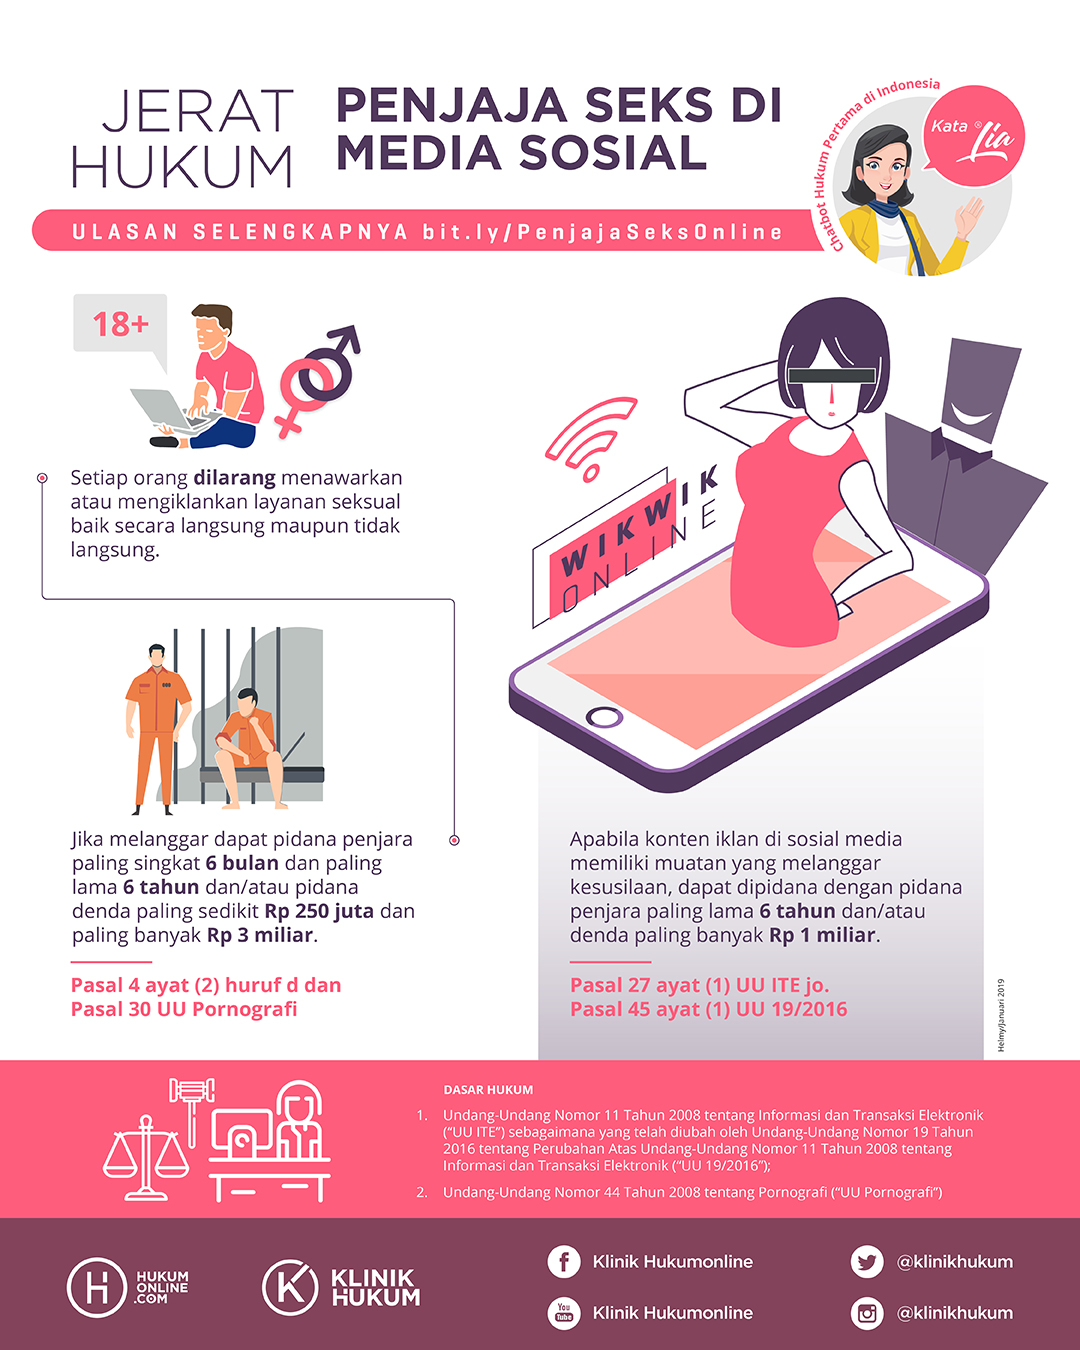 Jerat Hukum Penjaja Seks di Media Sosial